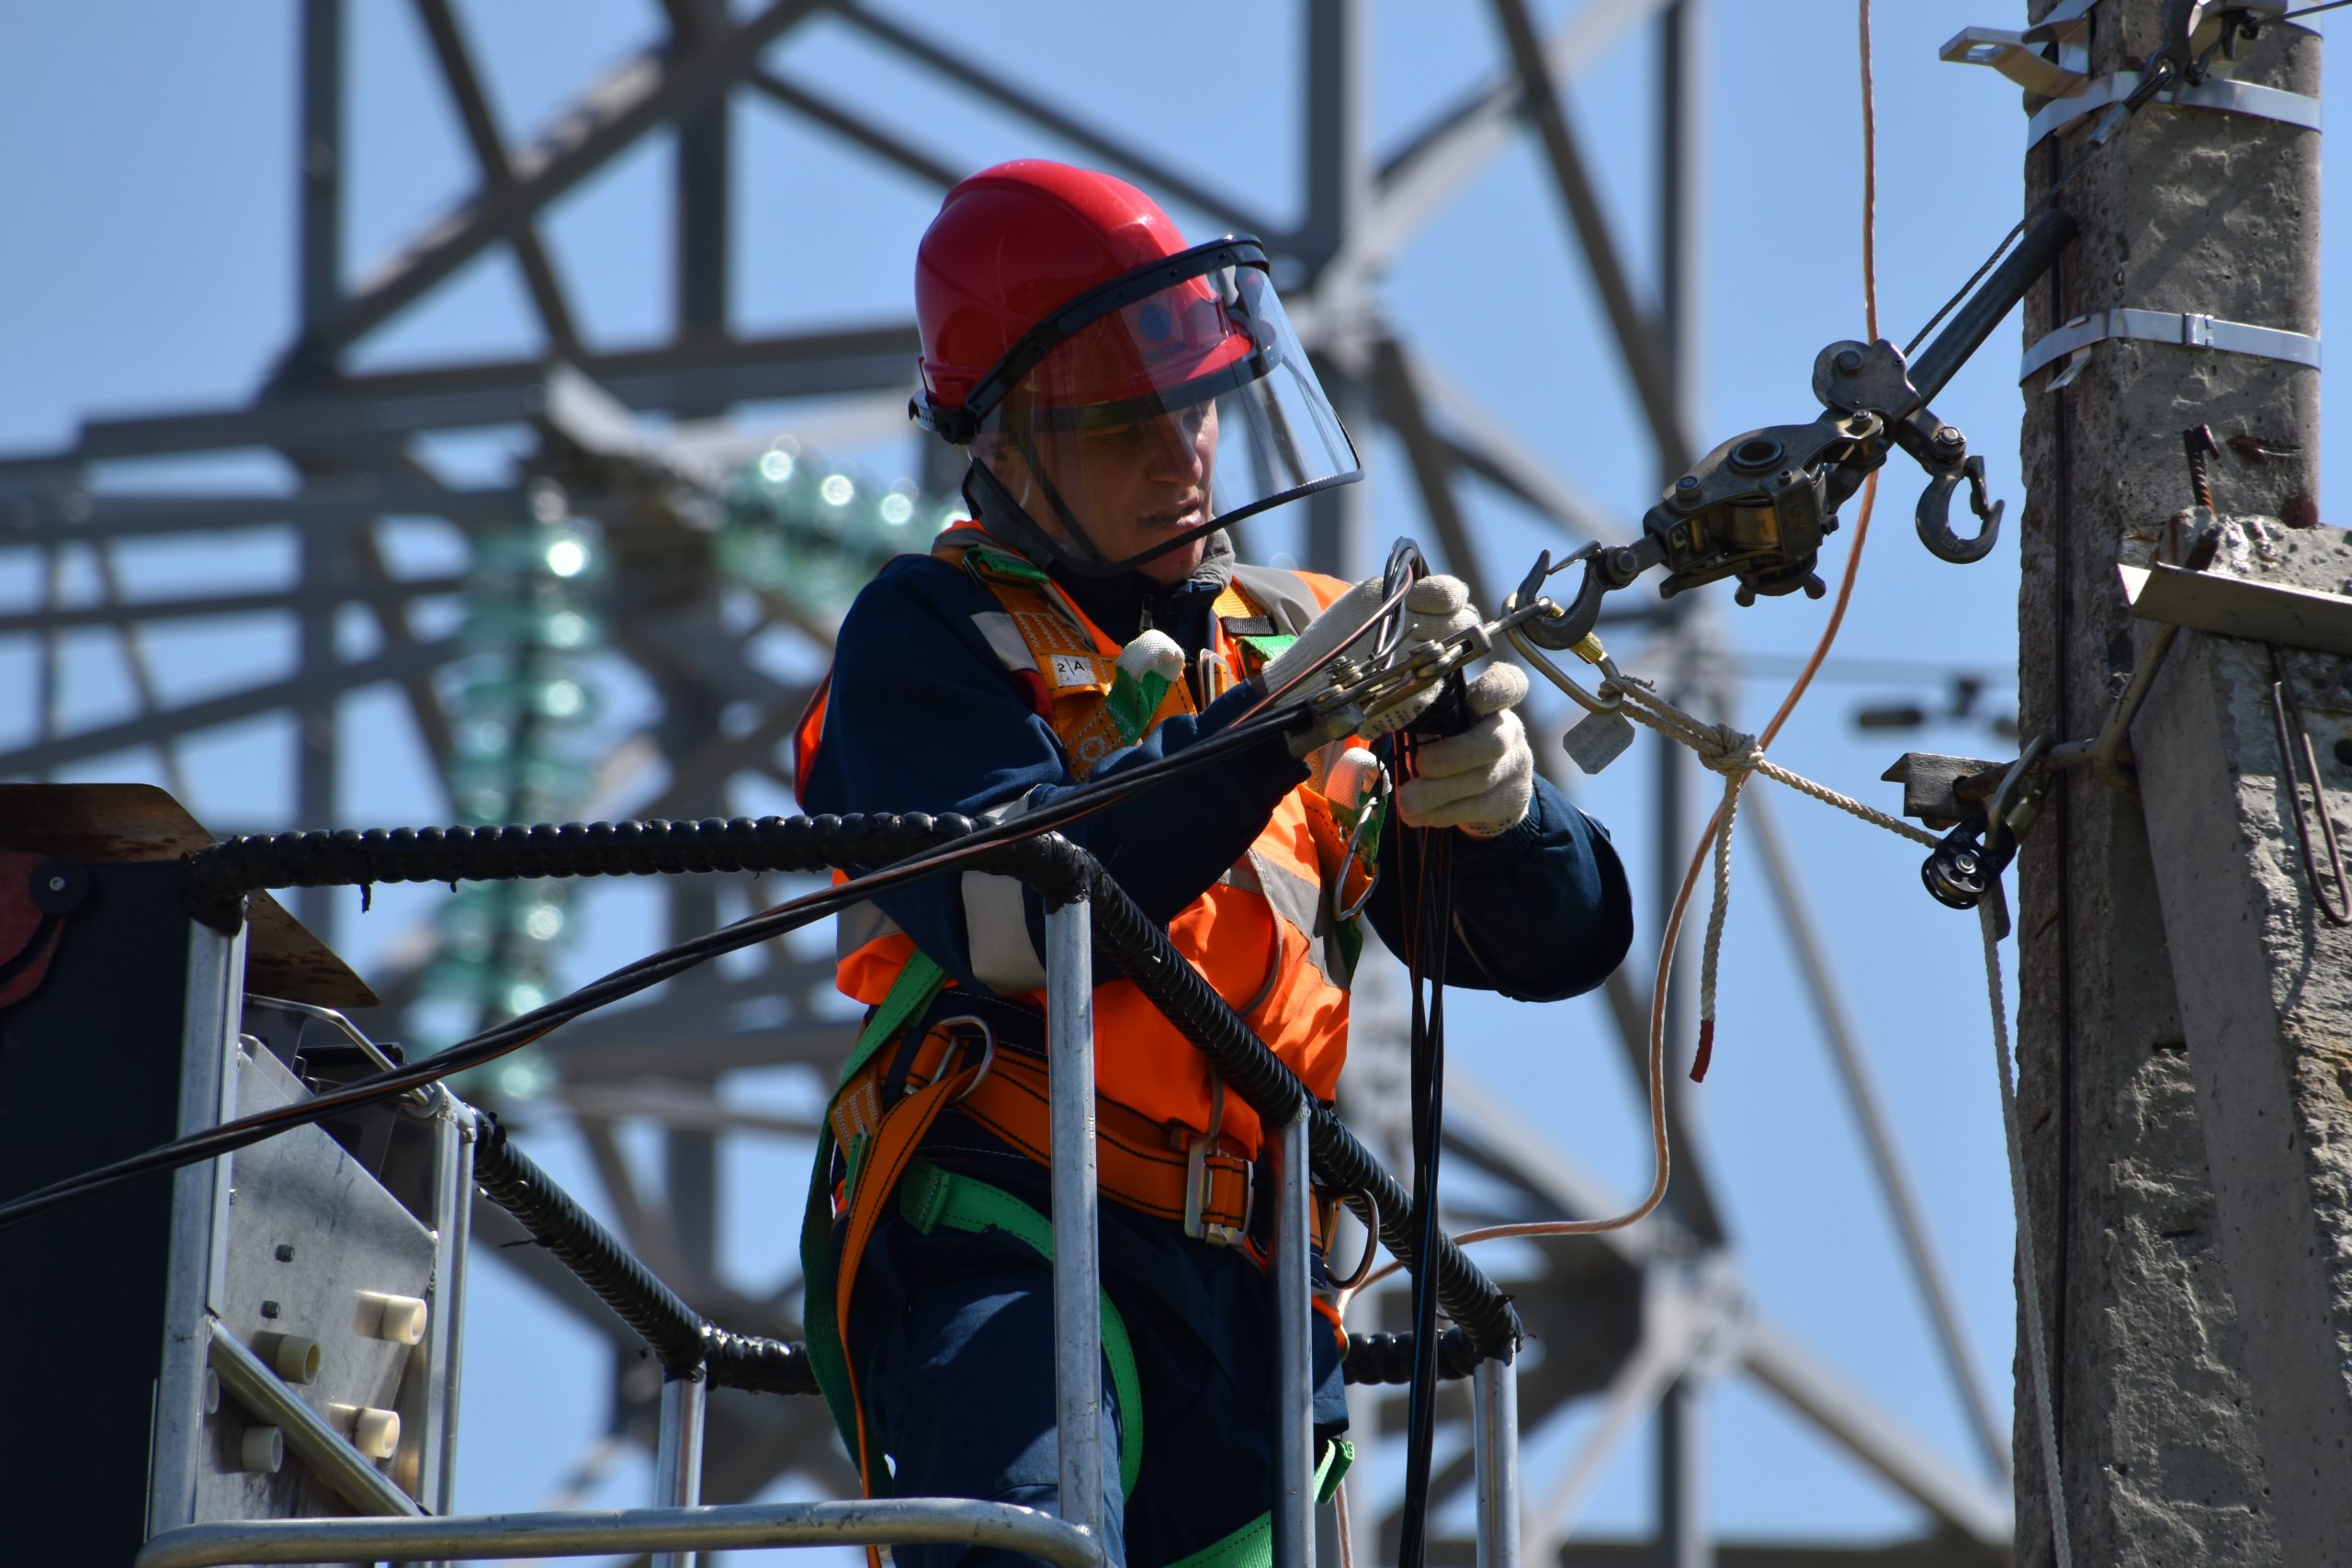 imagem de um homem fazendo uma instalação elétrica complexa no alto de um poste, representando uma instalação elétrica industrial.